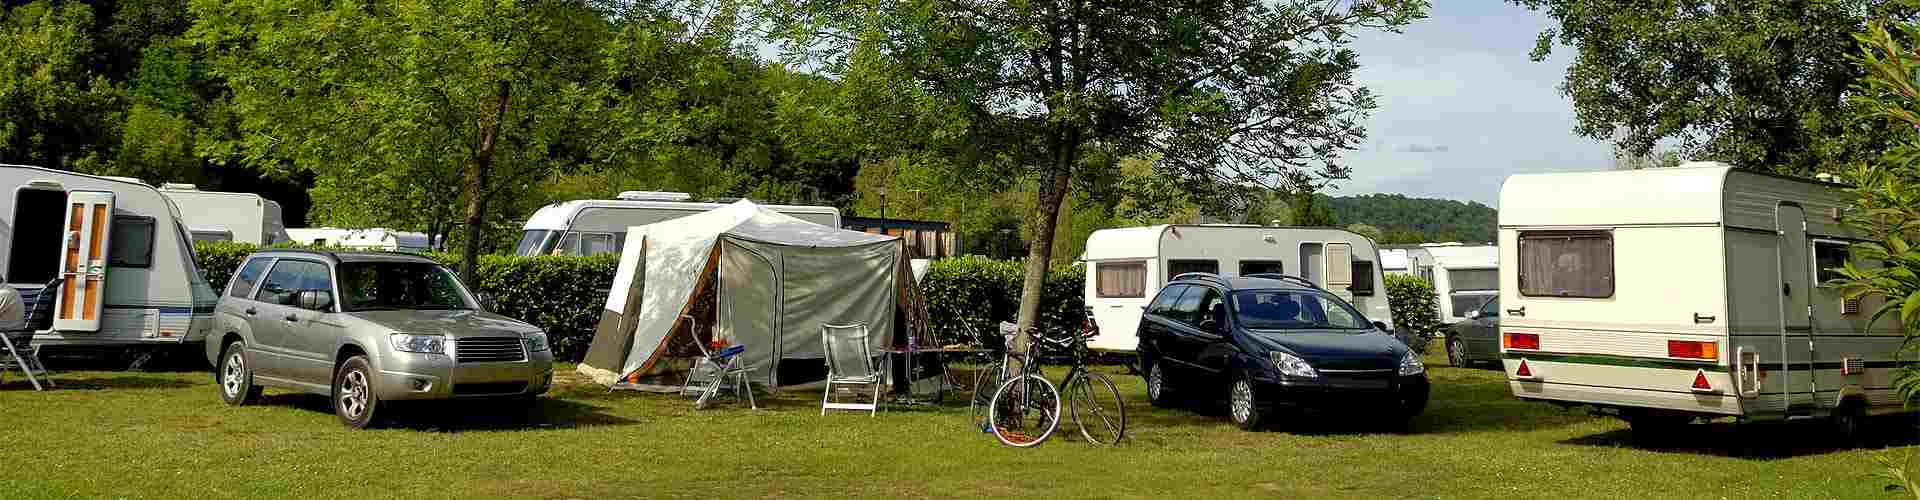 Campings y bungalows en Girona provincia